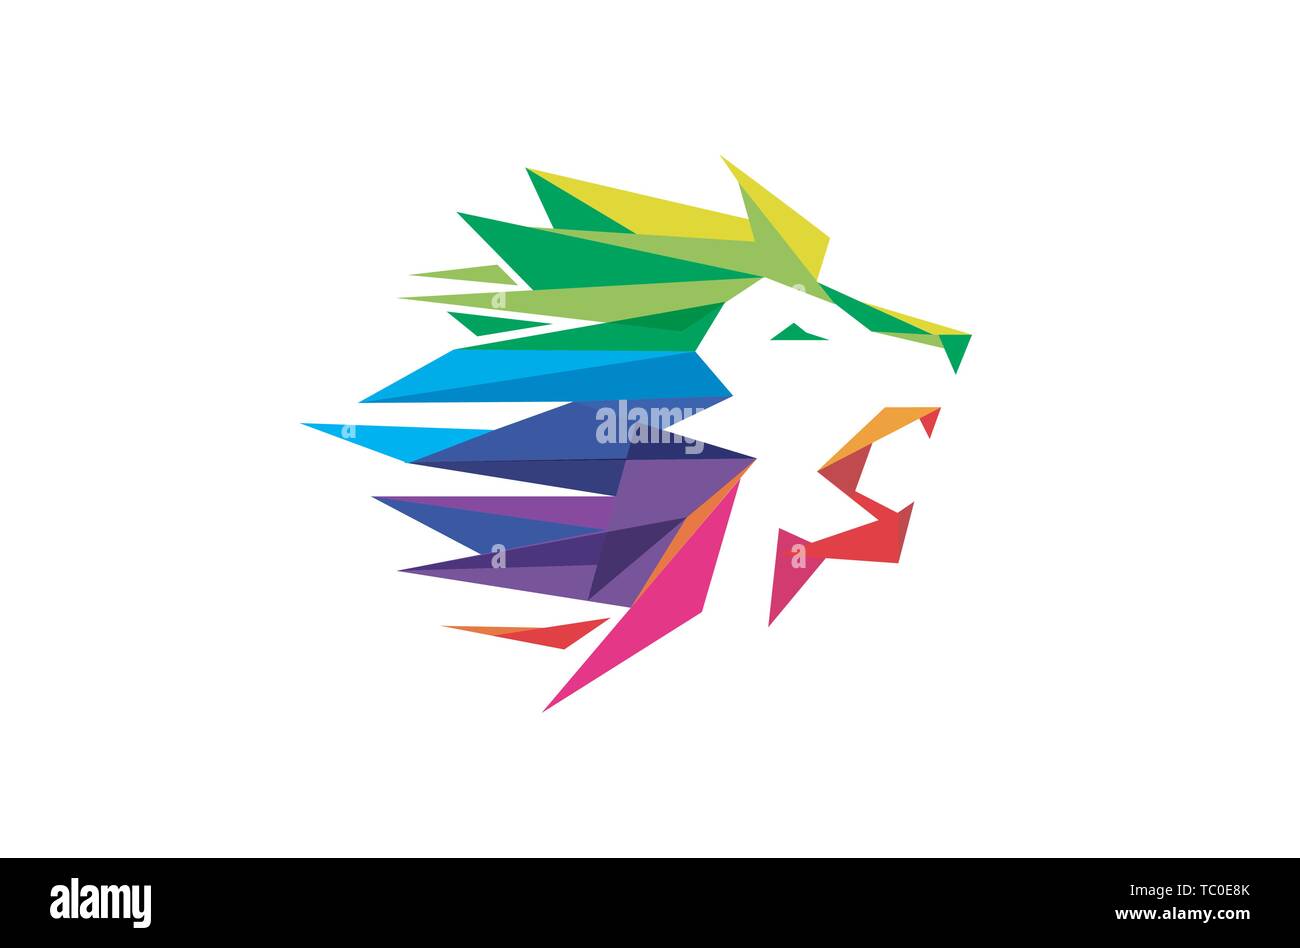 Disegno vettoriale del simbolo della testa del leone geometrico colorato creativo Illustrazione Vettoriale